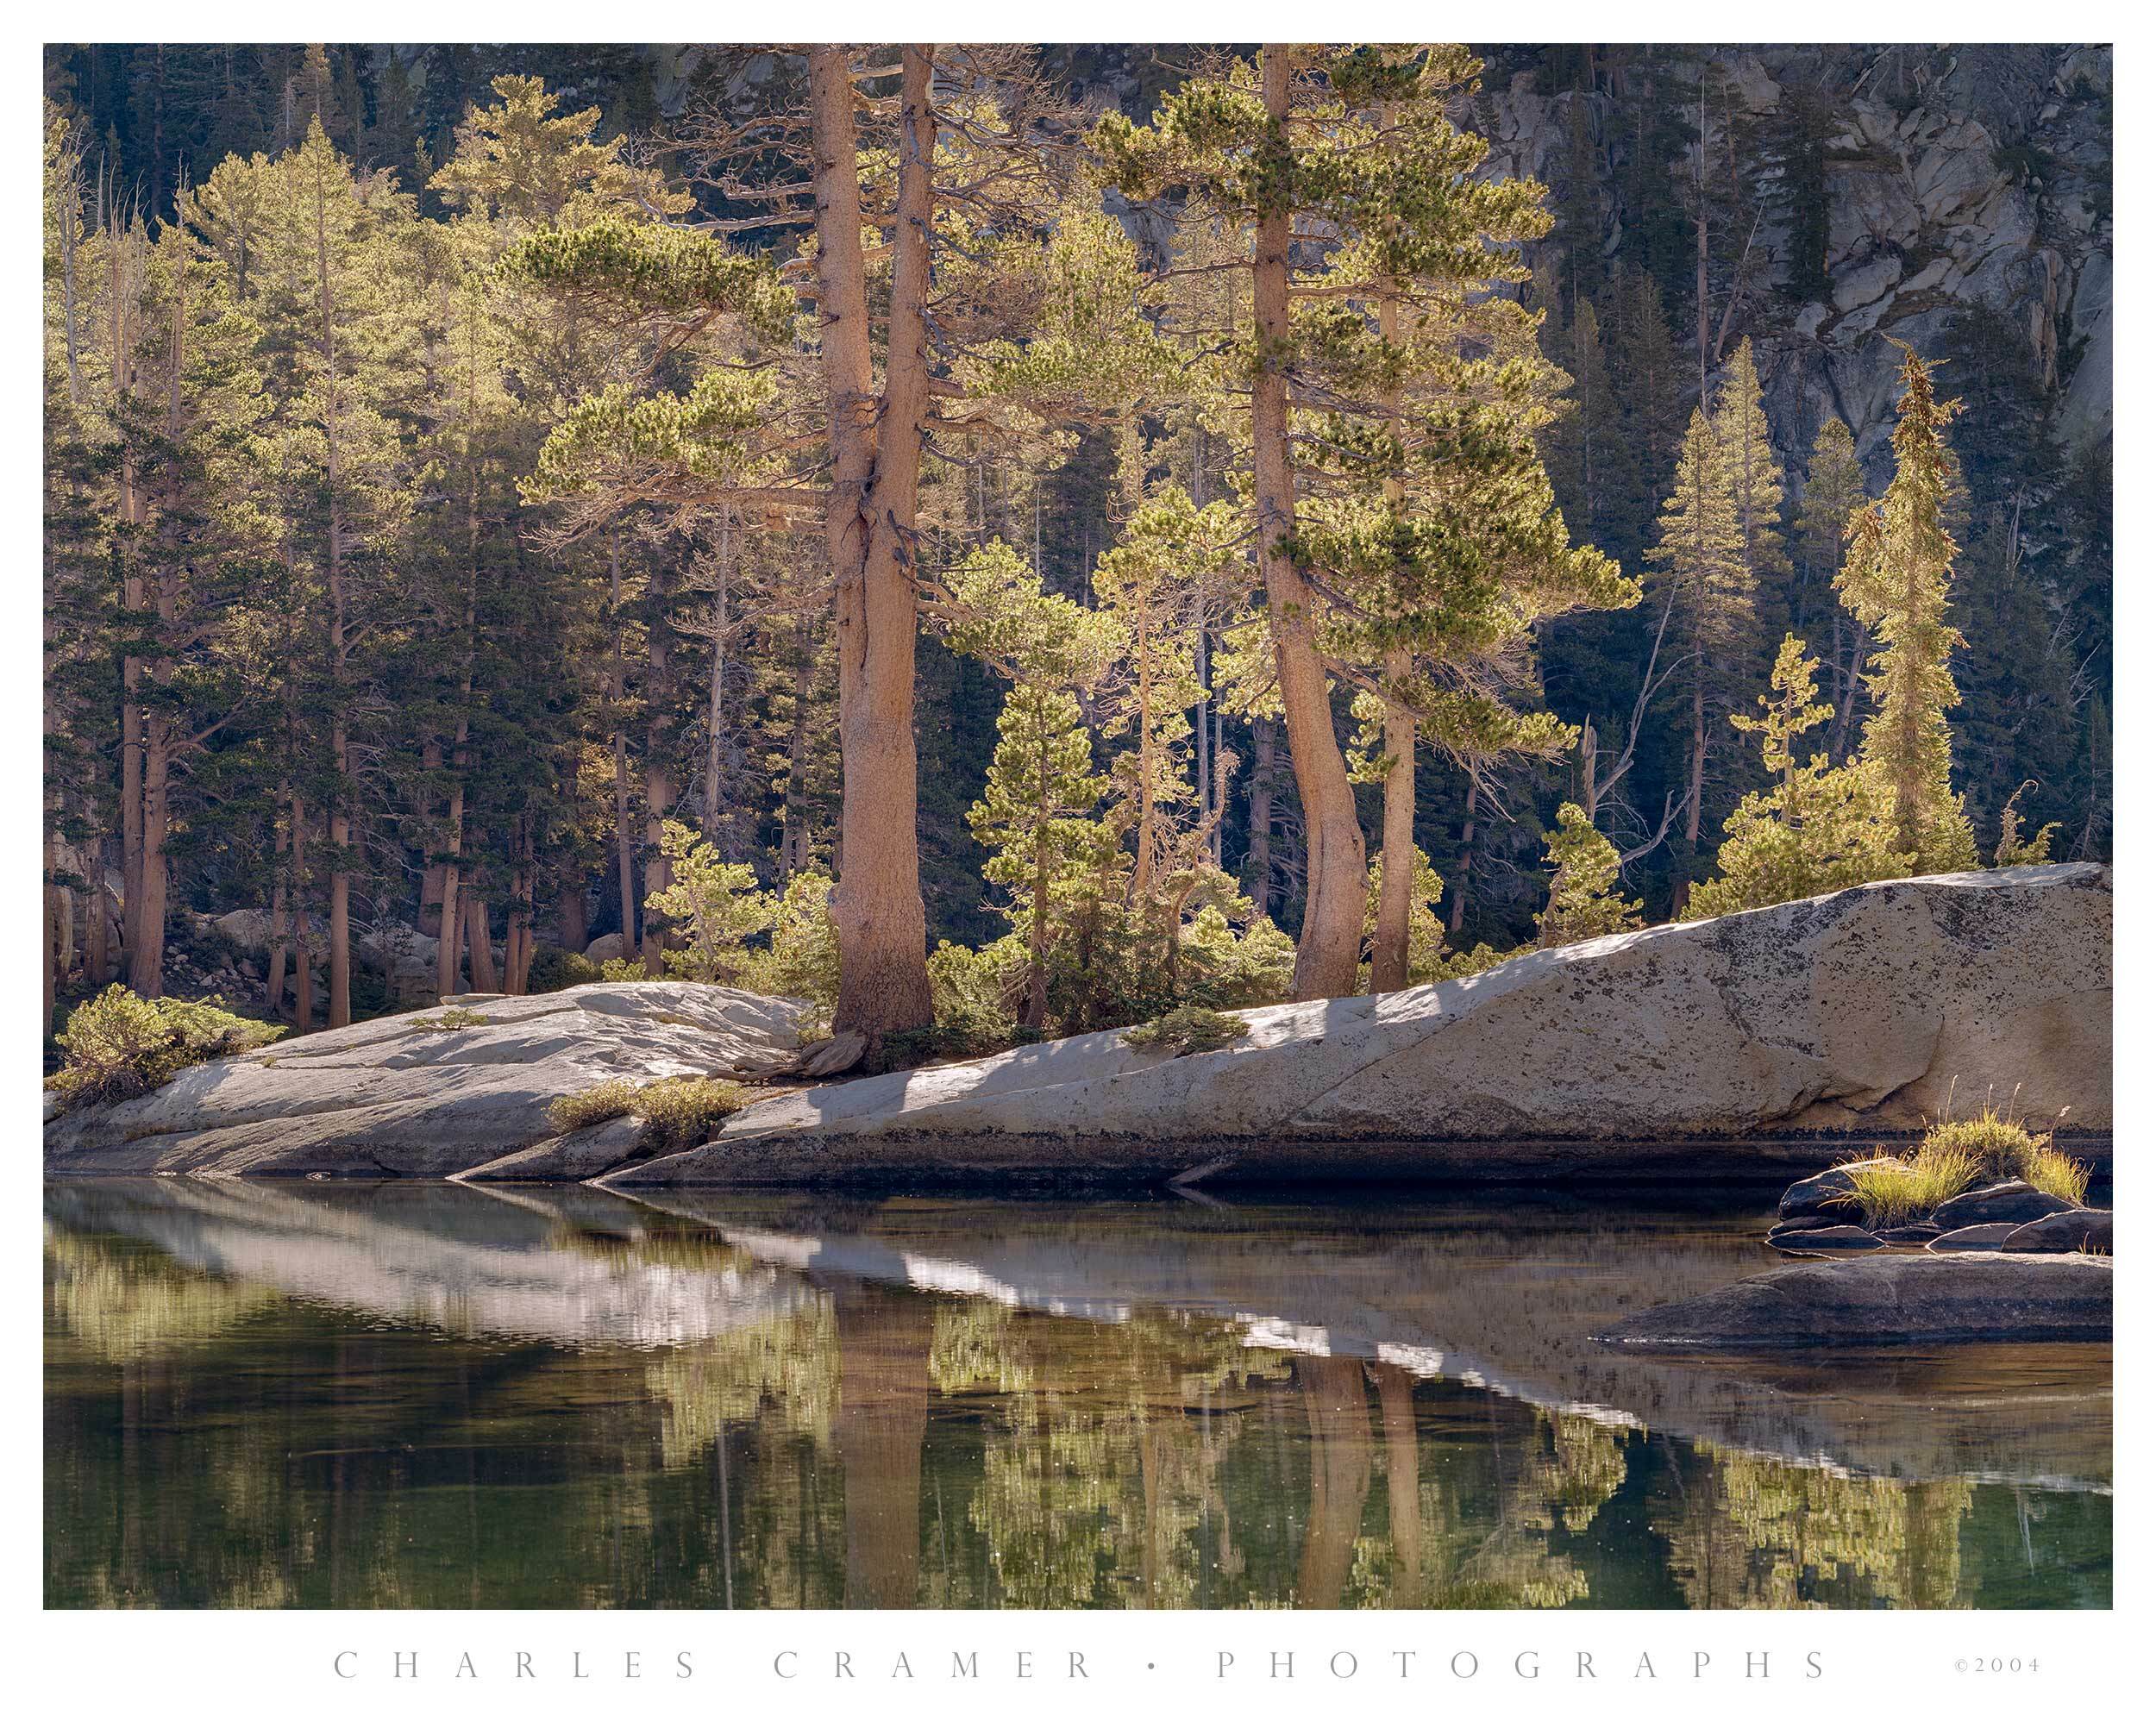 Backlit Pines and Granite, Ten Lakes Basin, Yosemite